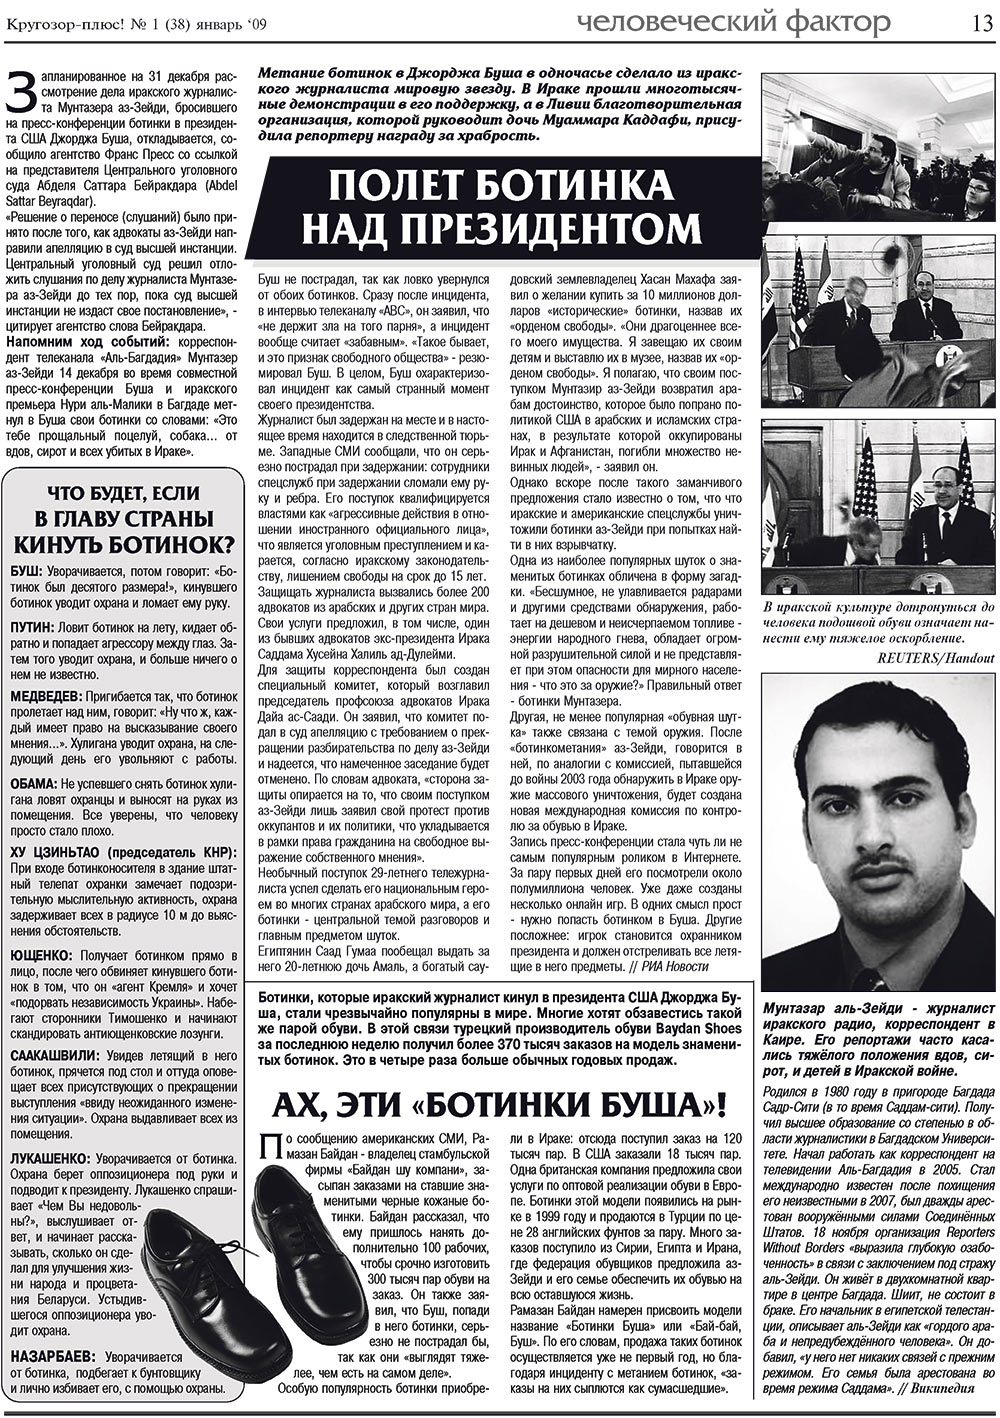 Кругозор плюс!, газета. 2009 №1 стр.13